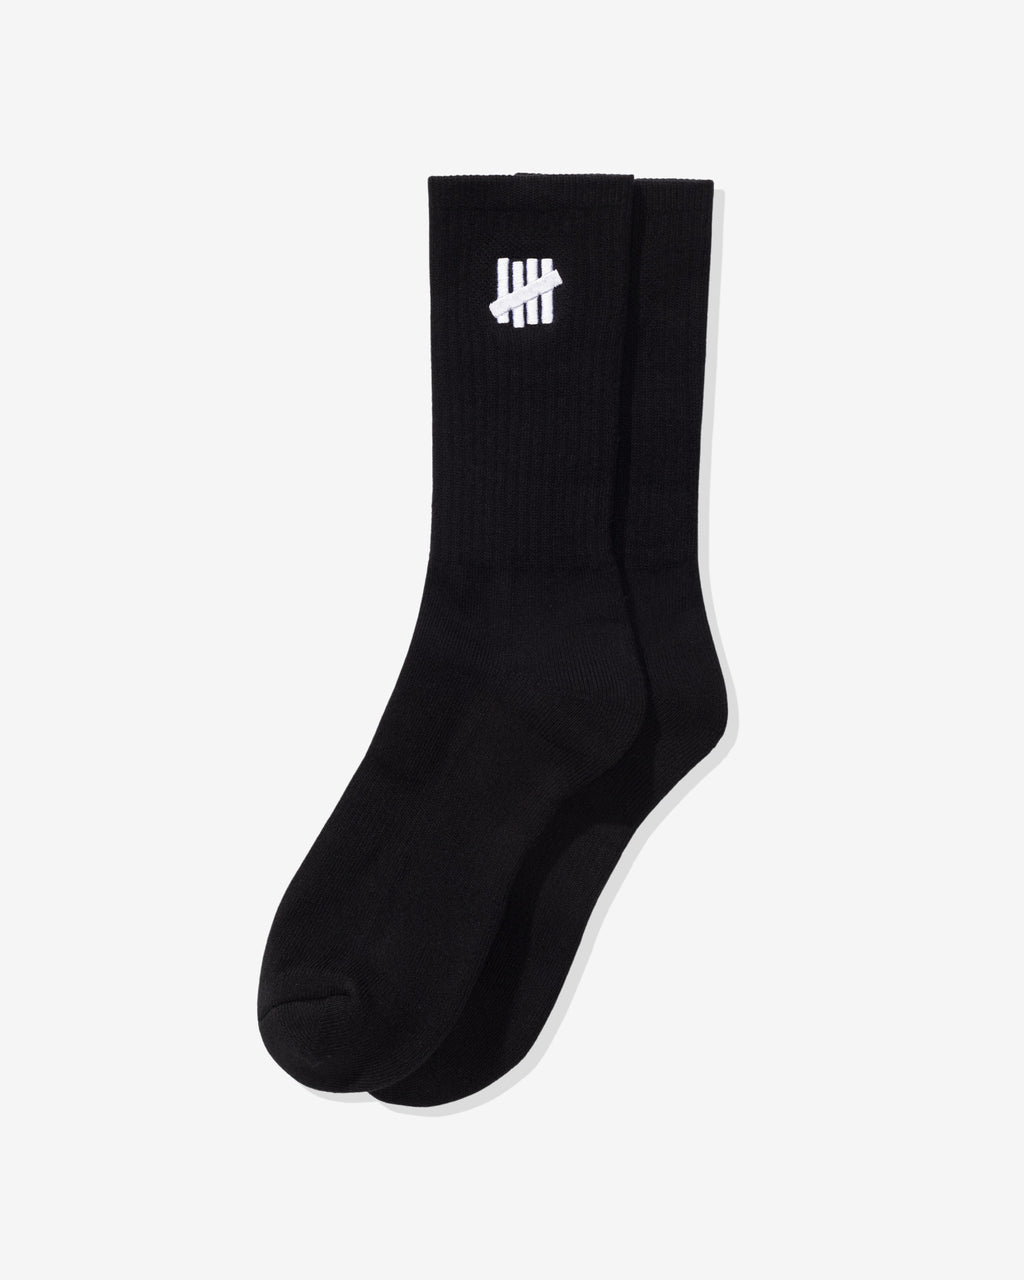 Socks – Undefeated